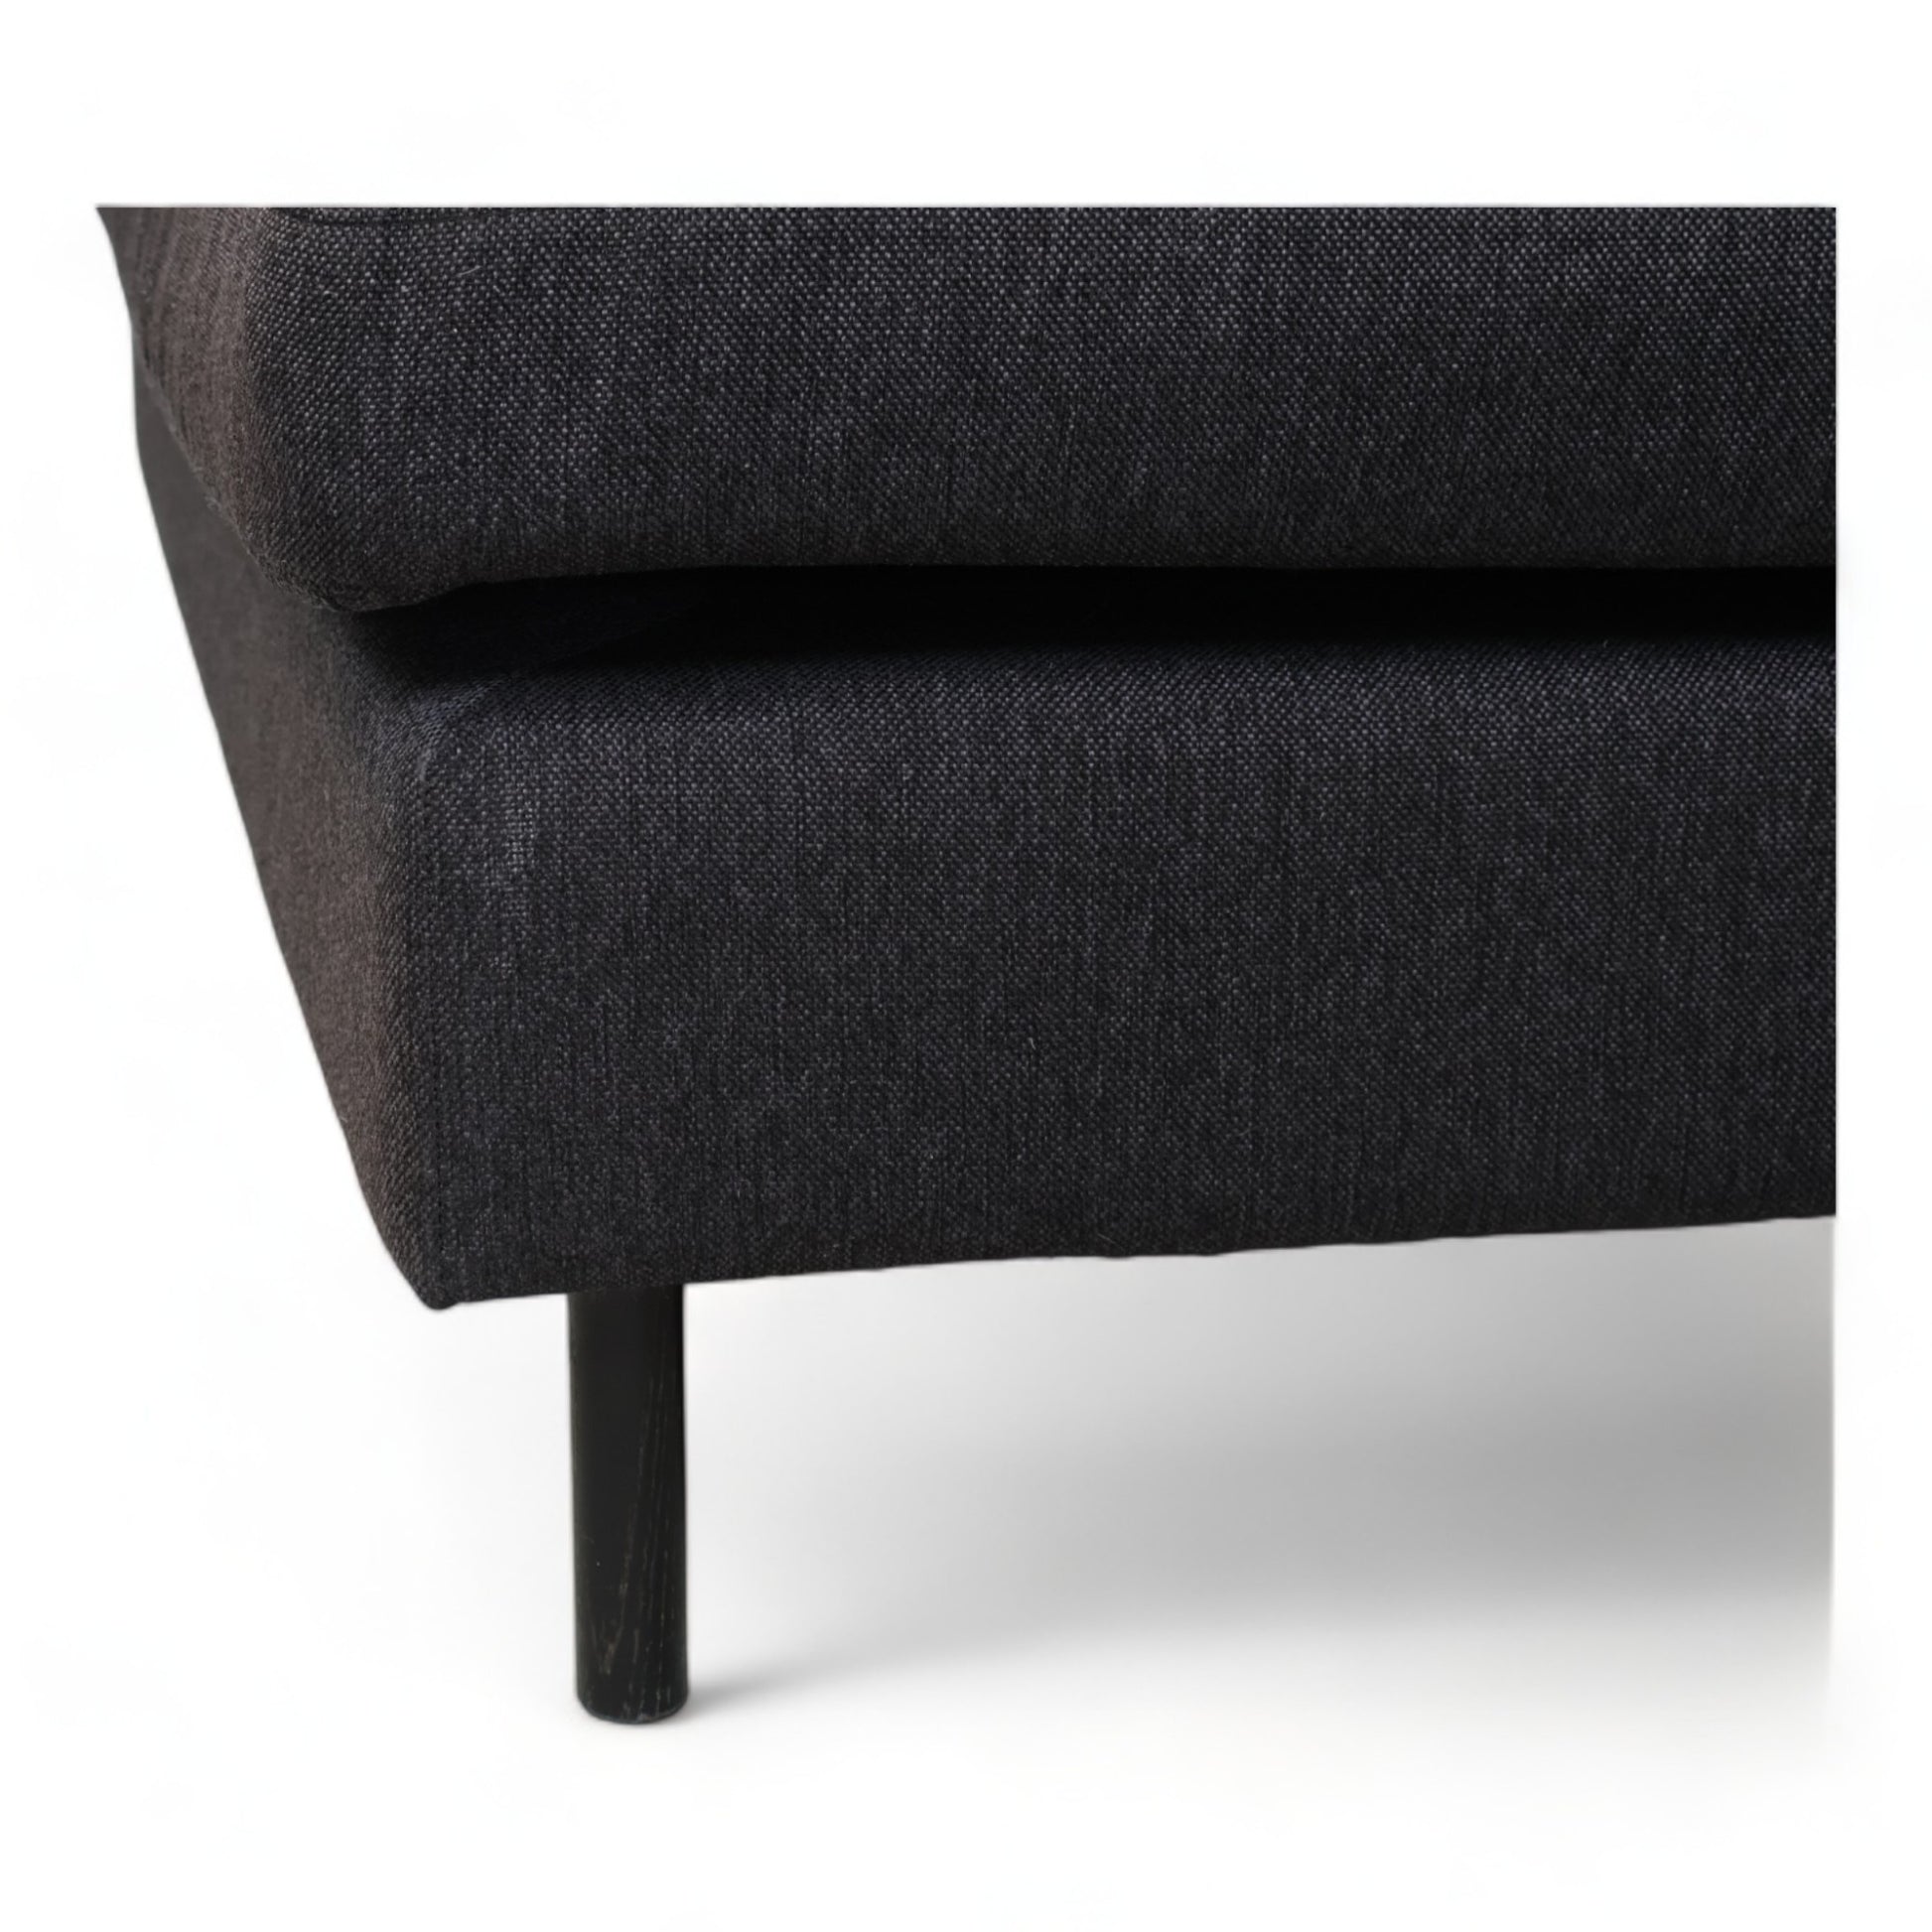 Nyrenset | Sort Bolia Scandinavia 3,5-seter sofa med sjeselong